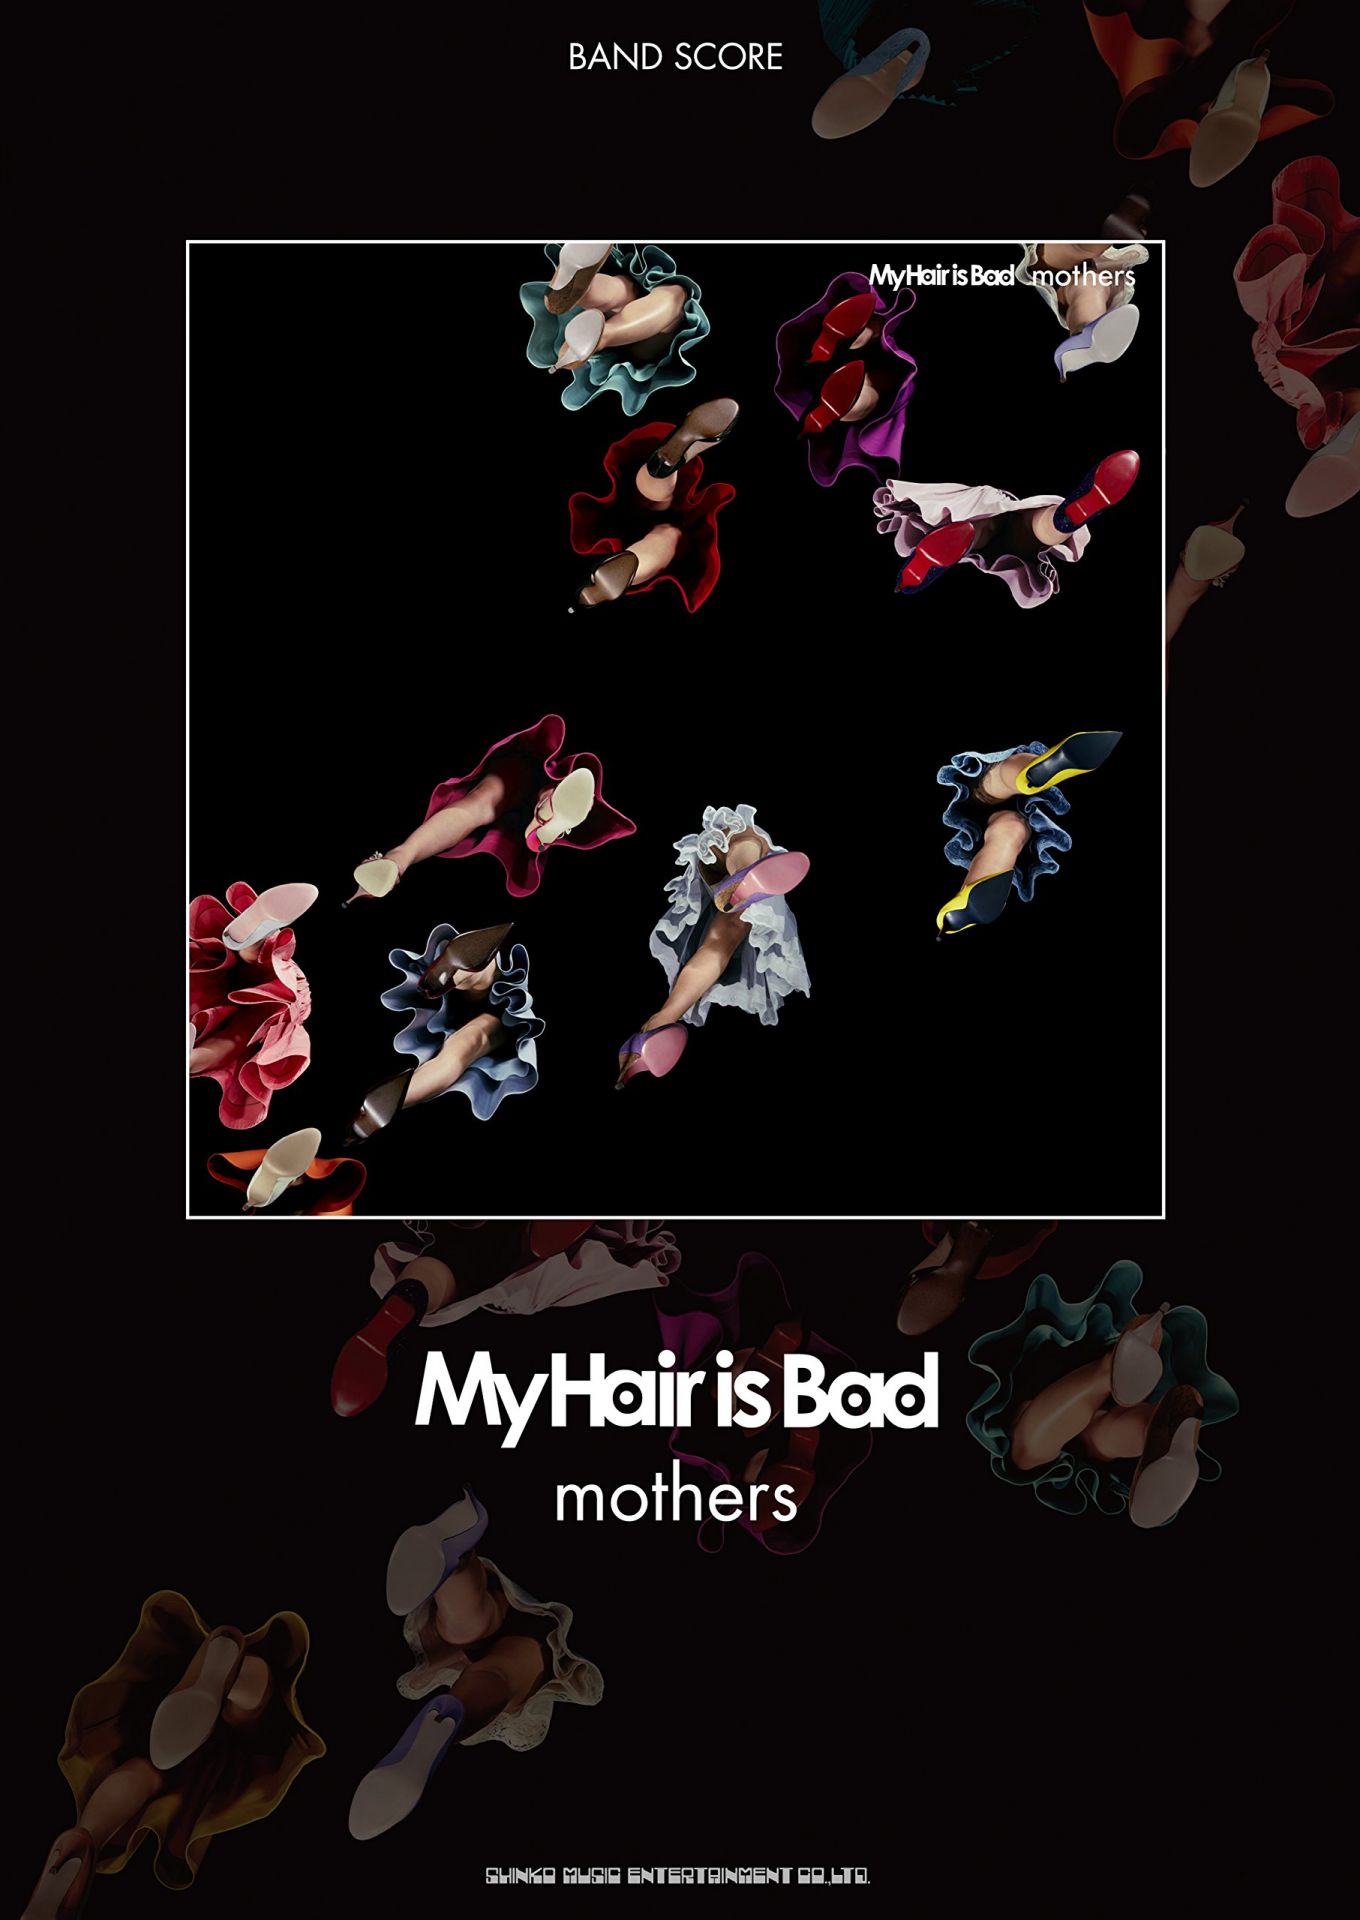 こんにちは。 バンドスコア担当のさいとうです。 back numberのVo.清水 依与吏さんが絶賛したバンド「My hair is Bad」の新刊が 入荷致しましたのでご紹介させていただきます。 **【バンドスコア】新刊「"MOTHERS"/My hair is Bad」 3人組ロックバンド「My […]